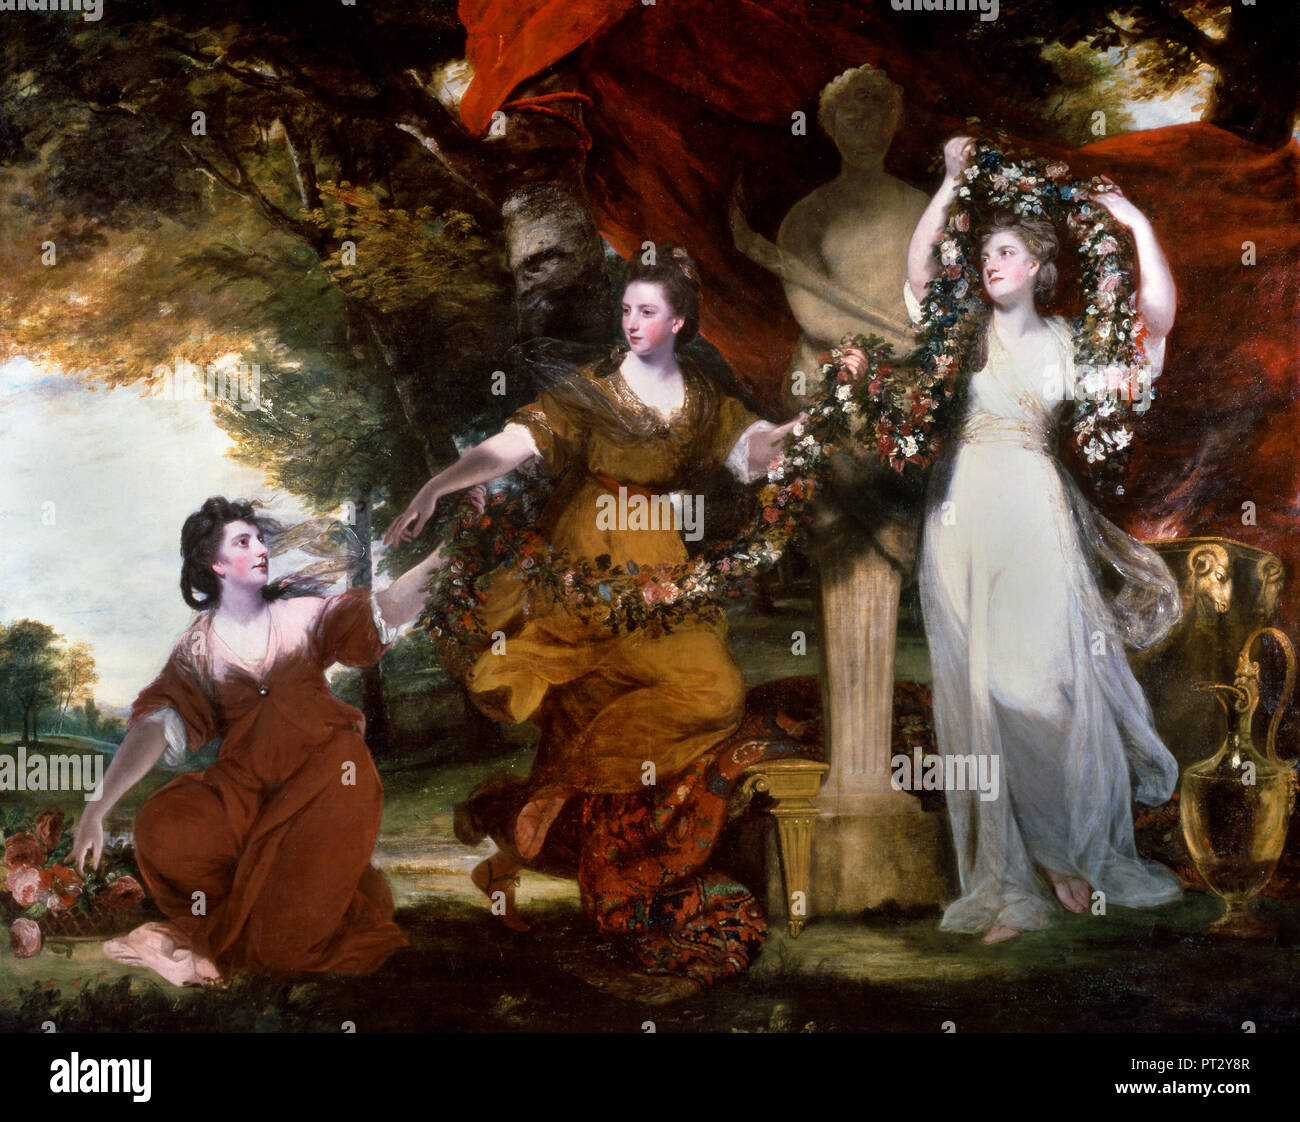 Joshua Reynolds, trois dames ornant un terme d'Hymen 1773 Huile sur toile, Tate Britain, Londres, Angleterre. Banque D'Images